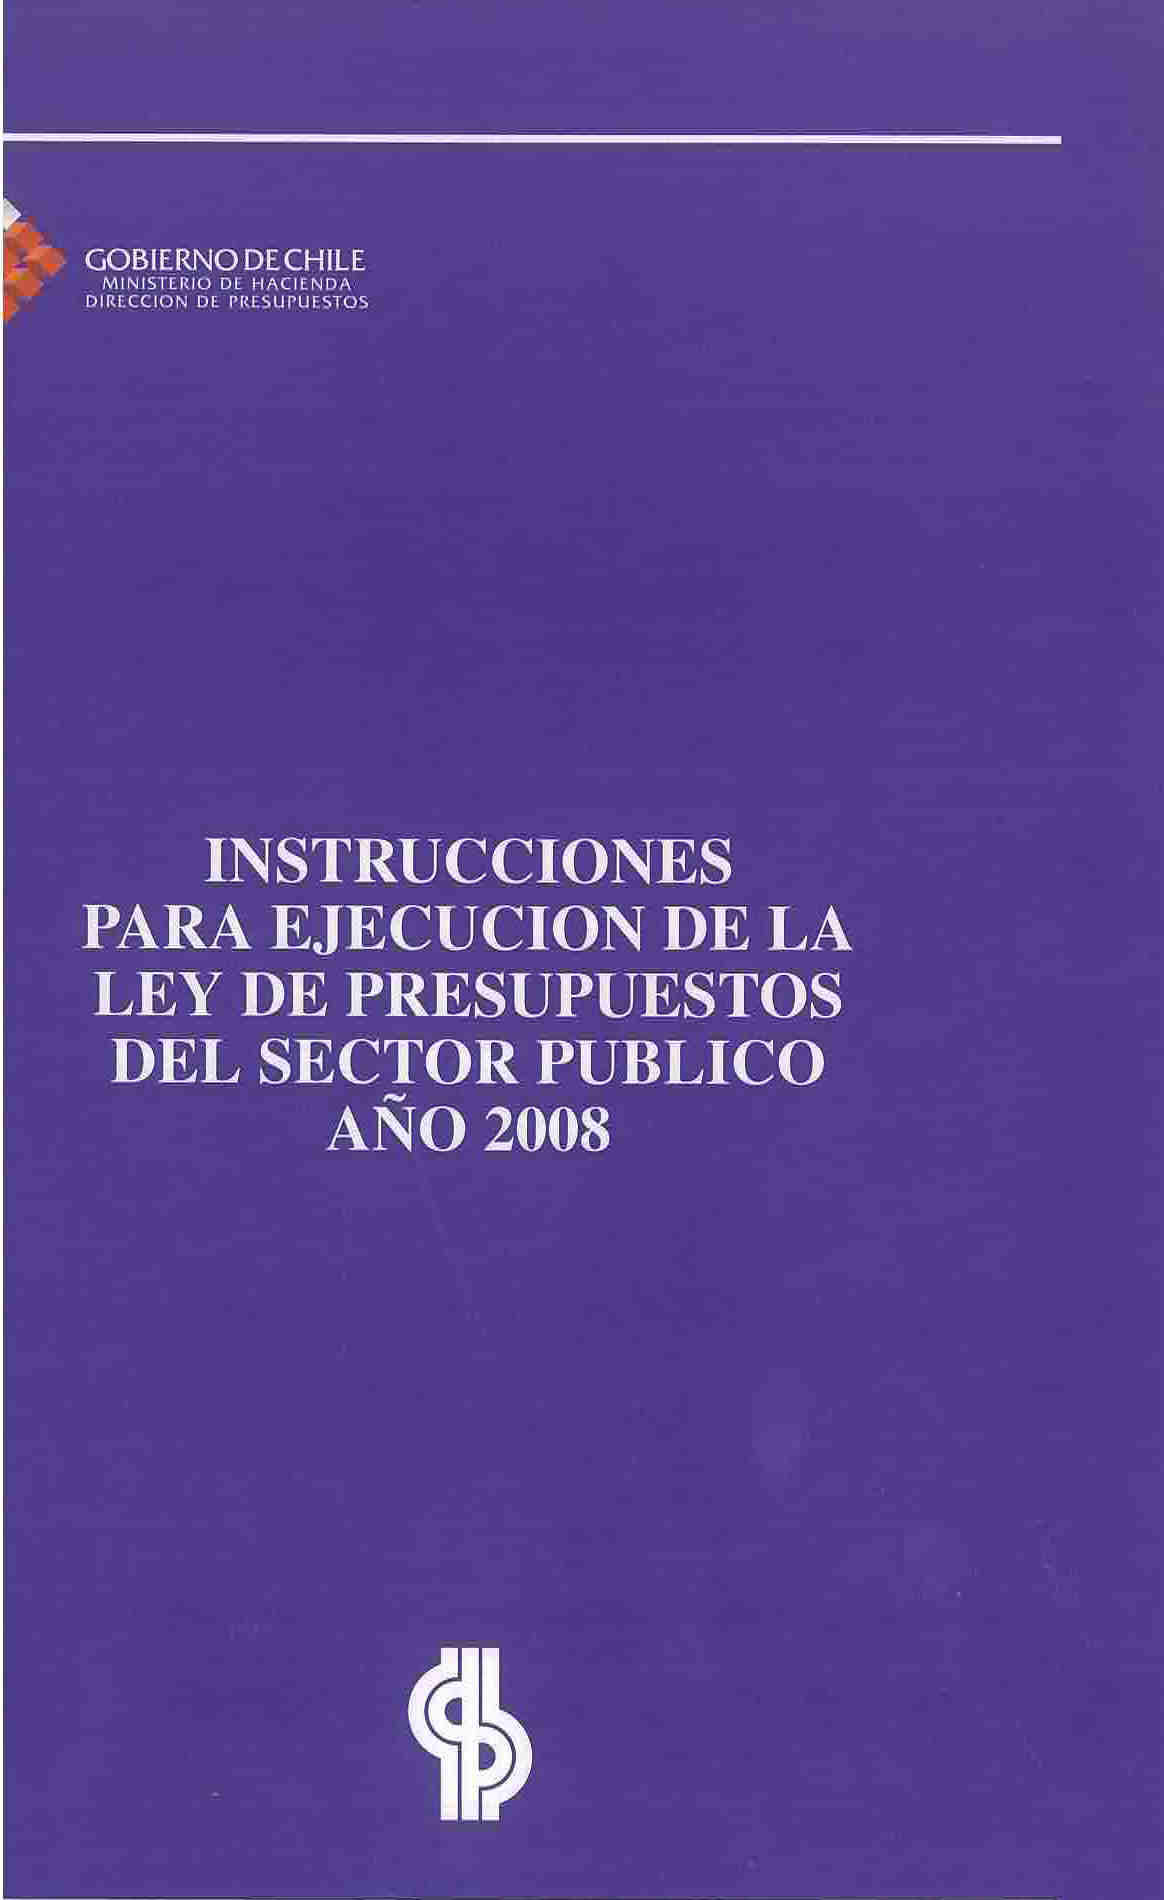 Instrucciones para ejecución de la ley de presupuestos del sector público año 2008